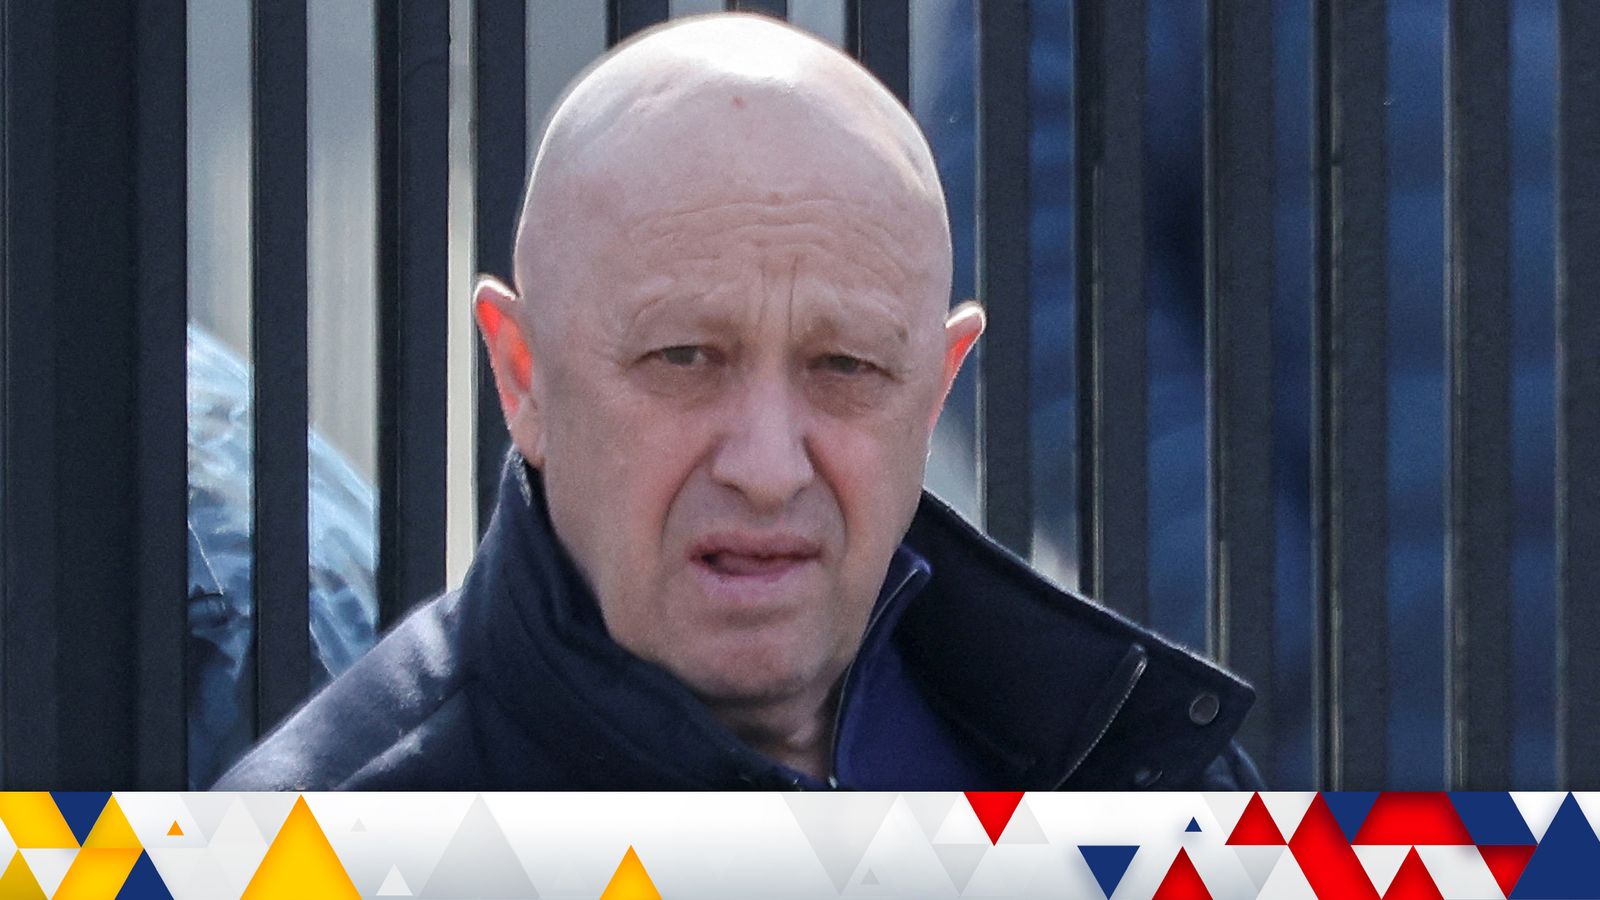 Yevgeny Prigozhin: Is Wagner mercenary boss at event with Vladimir Putin in Russia?